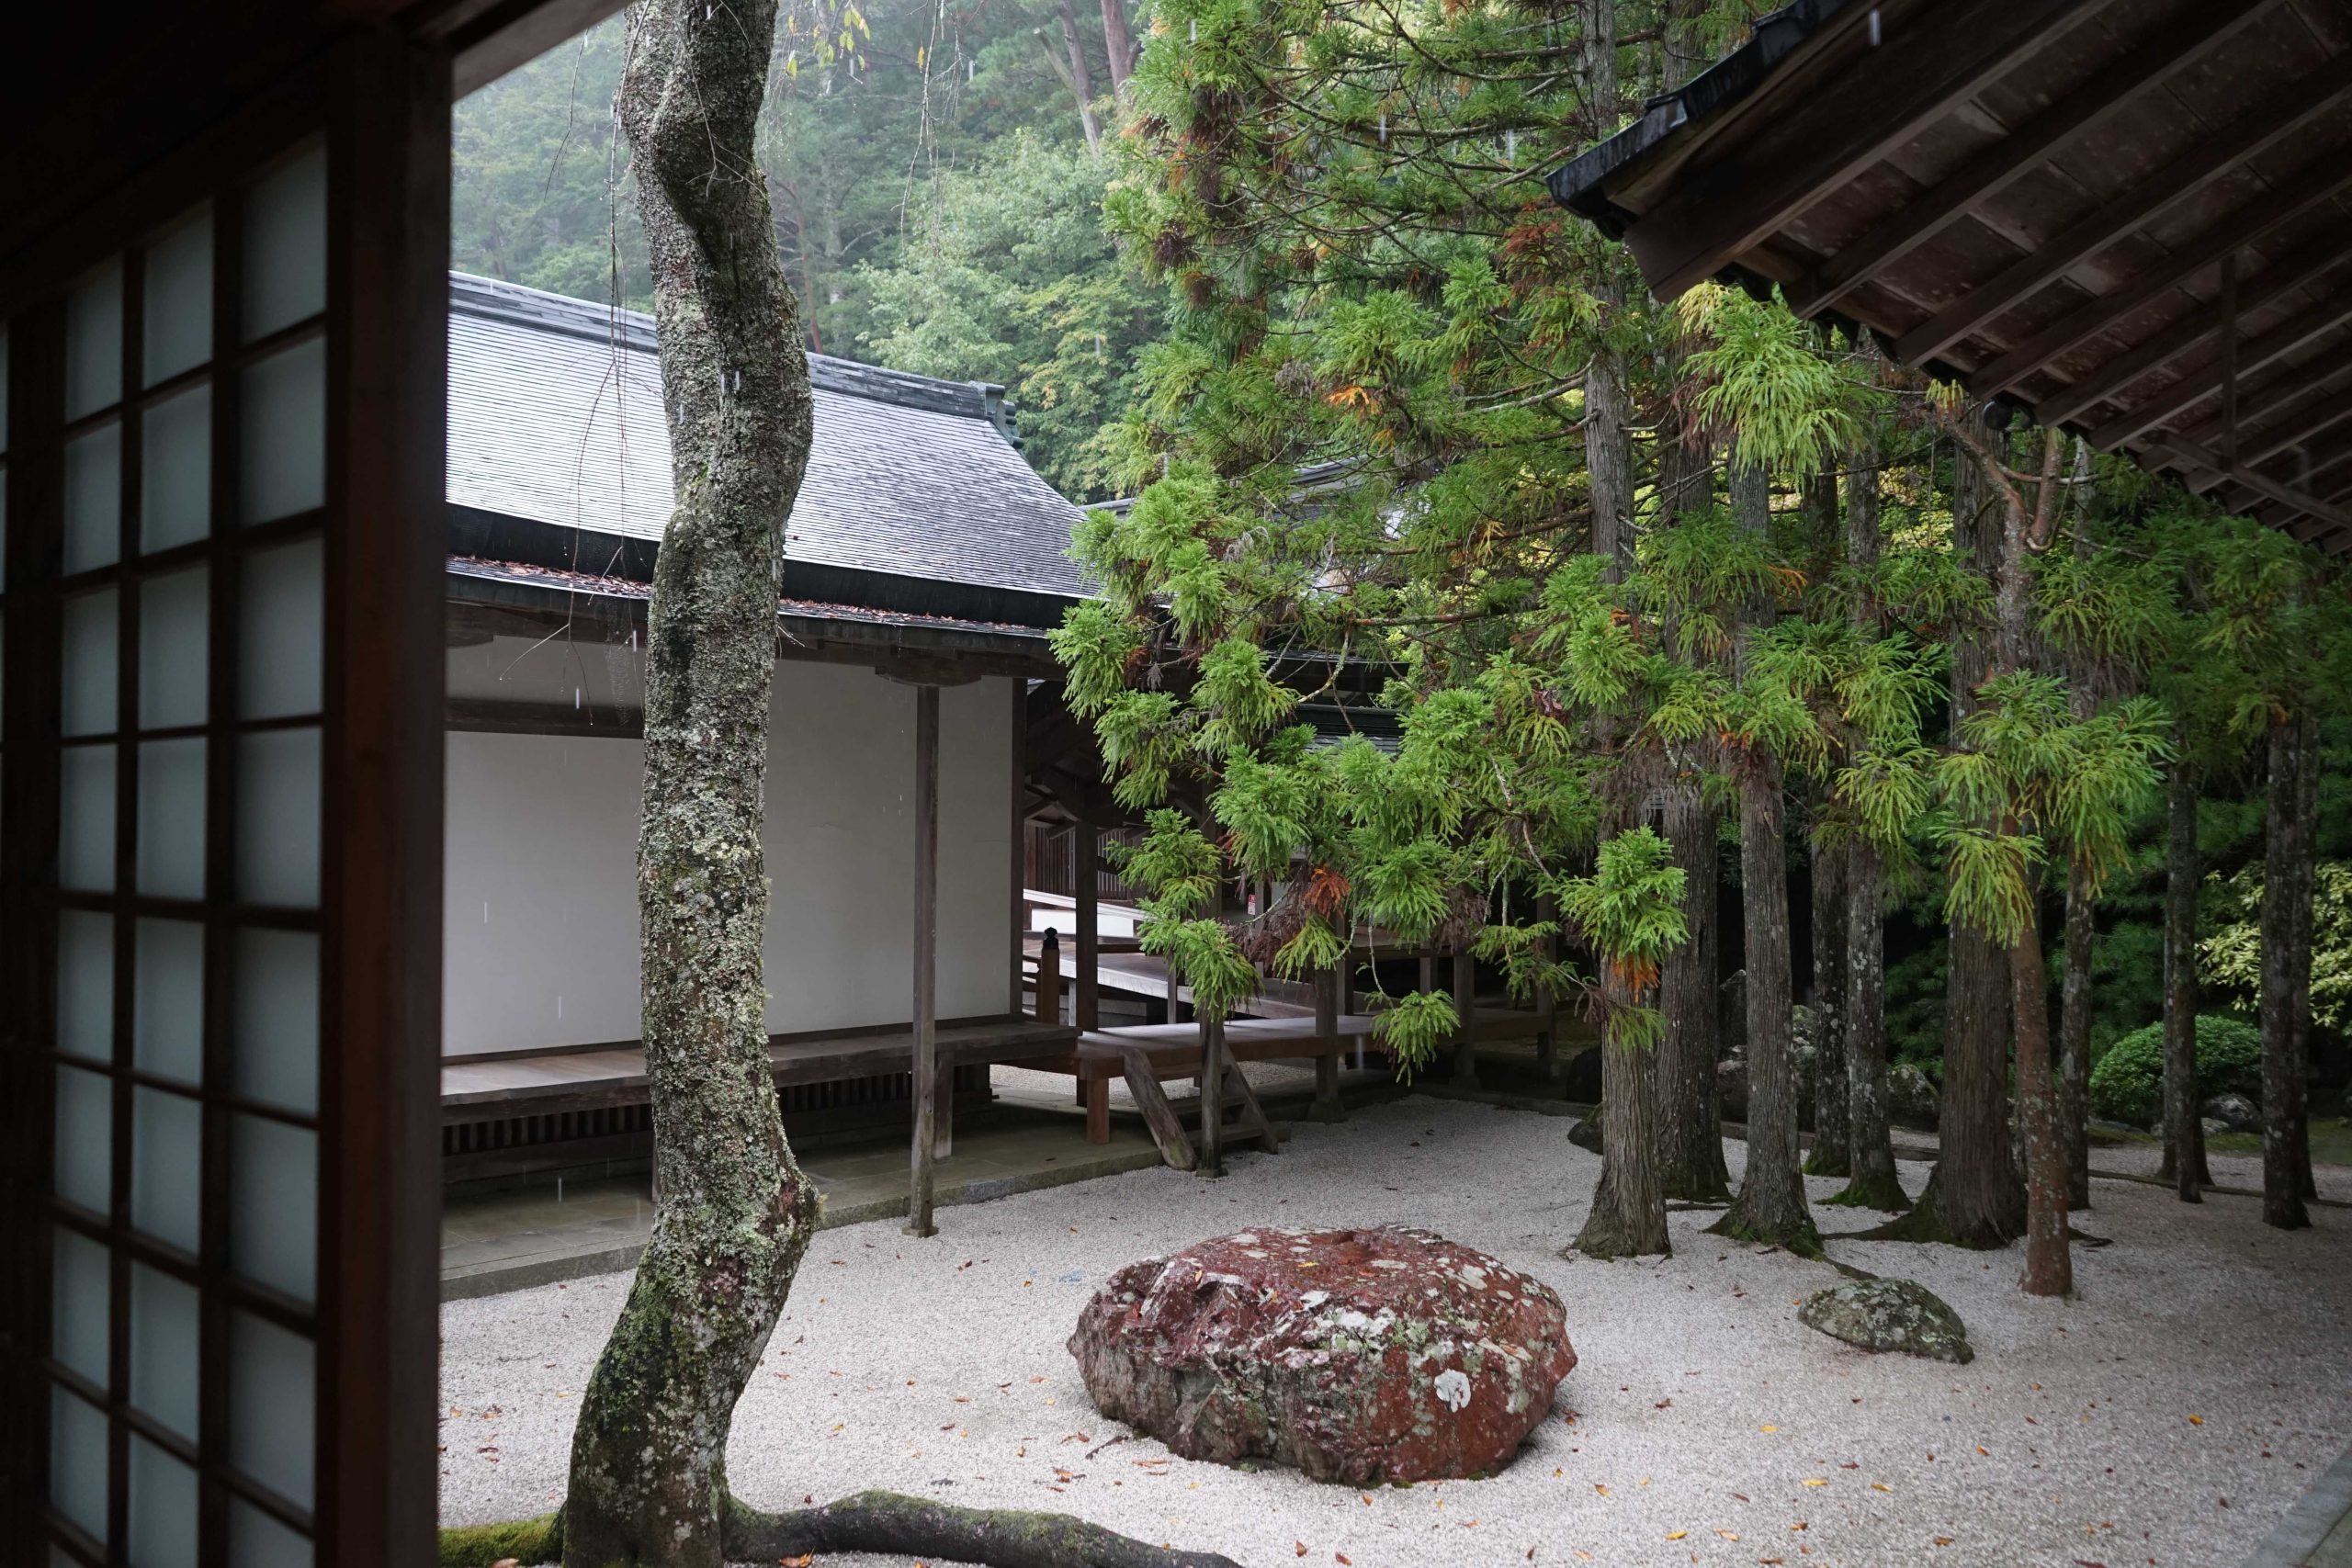 Japanese Zen-inspired